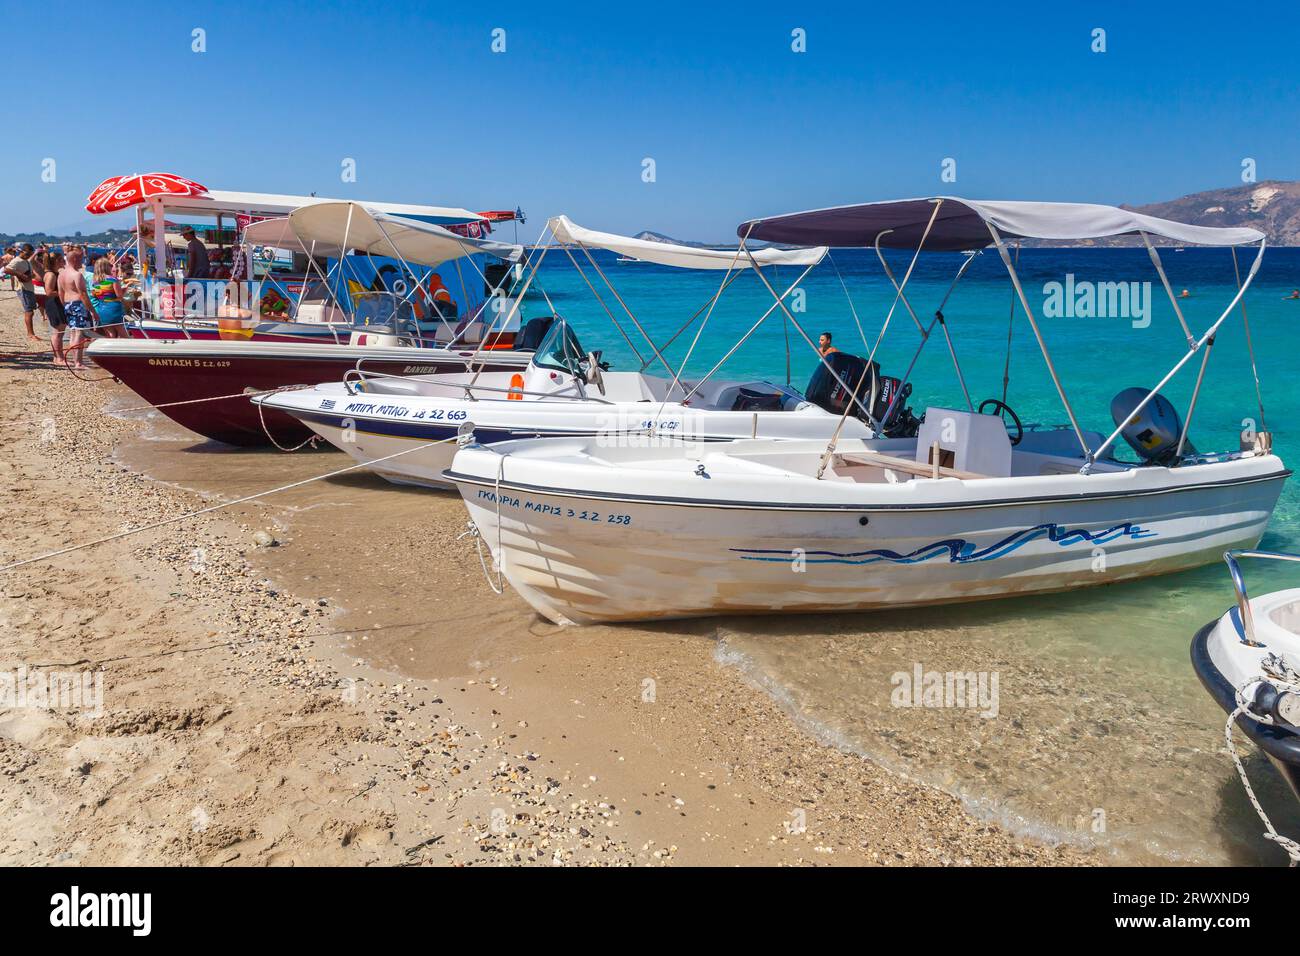 Zakynthos, Griechenland - 16. August 2016: Motorboote sind am Strand, Touristen ruhen sich in der Nähe aus. Zakynthos, Griechenland Stockfoto